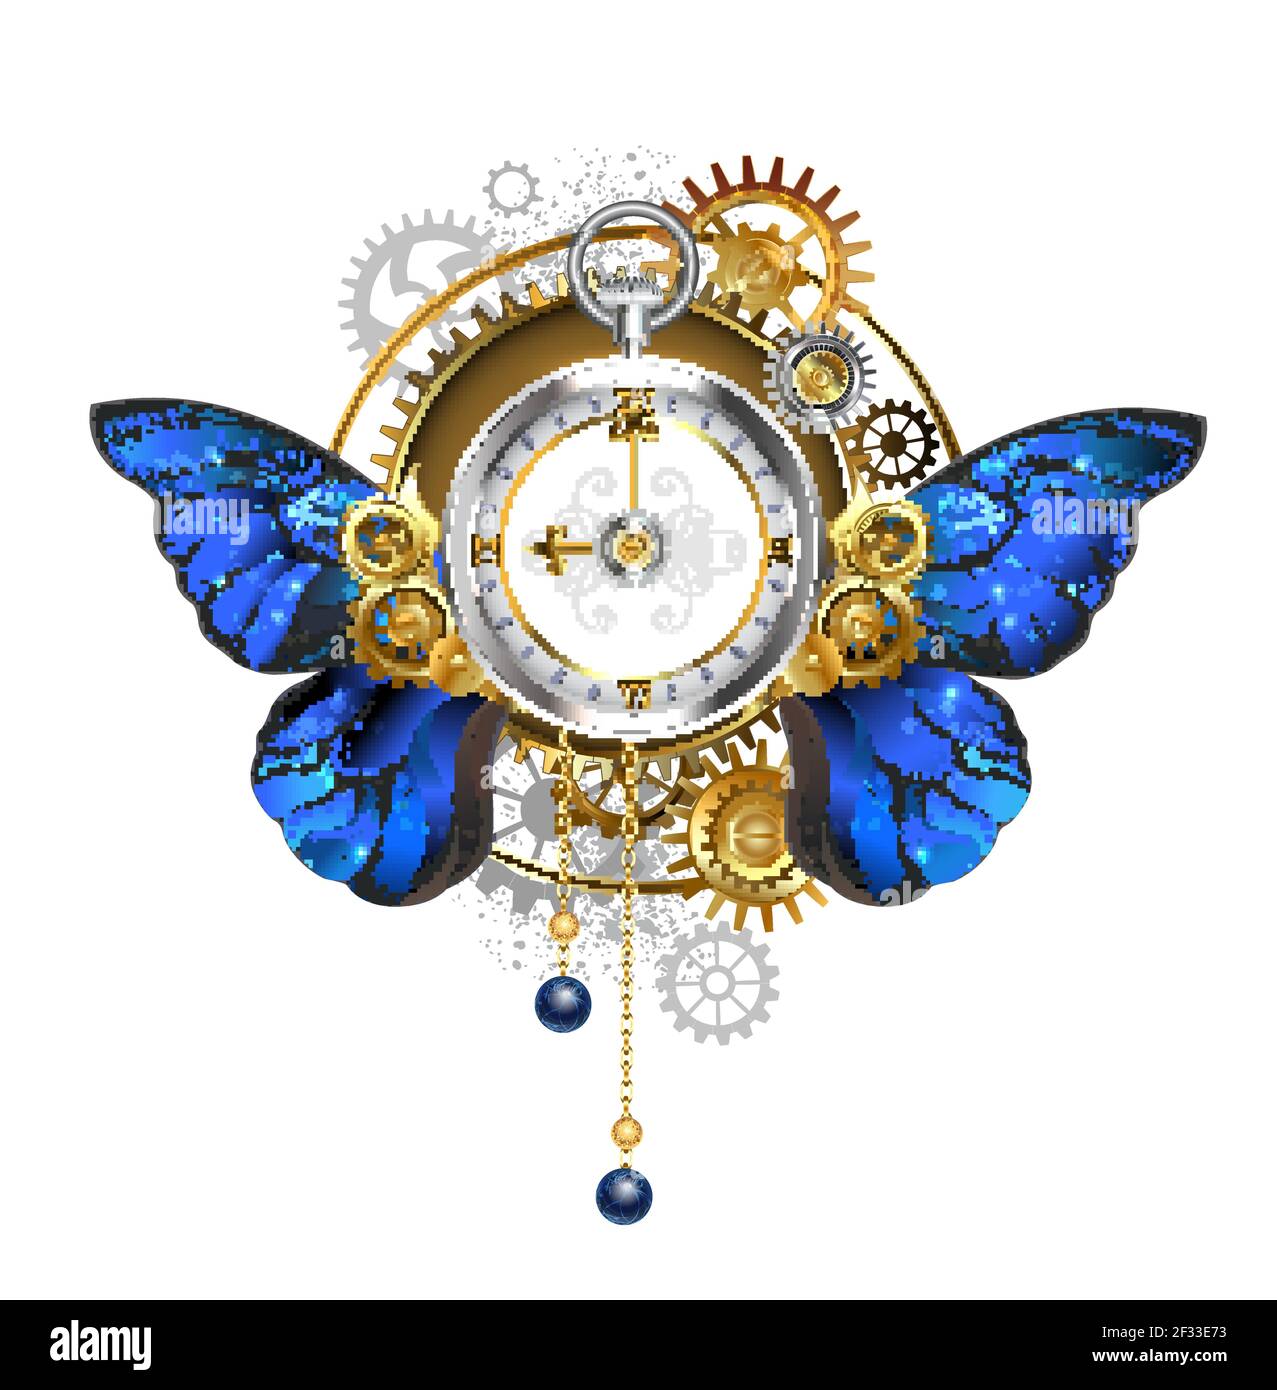 Antique, argent steampunk montre avec des ailes de papillon morpho bleu, réaliste, avec cadran avec des chiffres romains d'or, orné d'or, laiton et gris gea Illustration de Vecteur